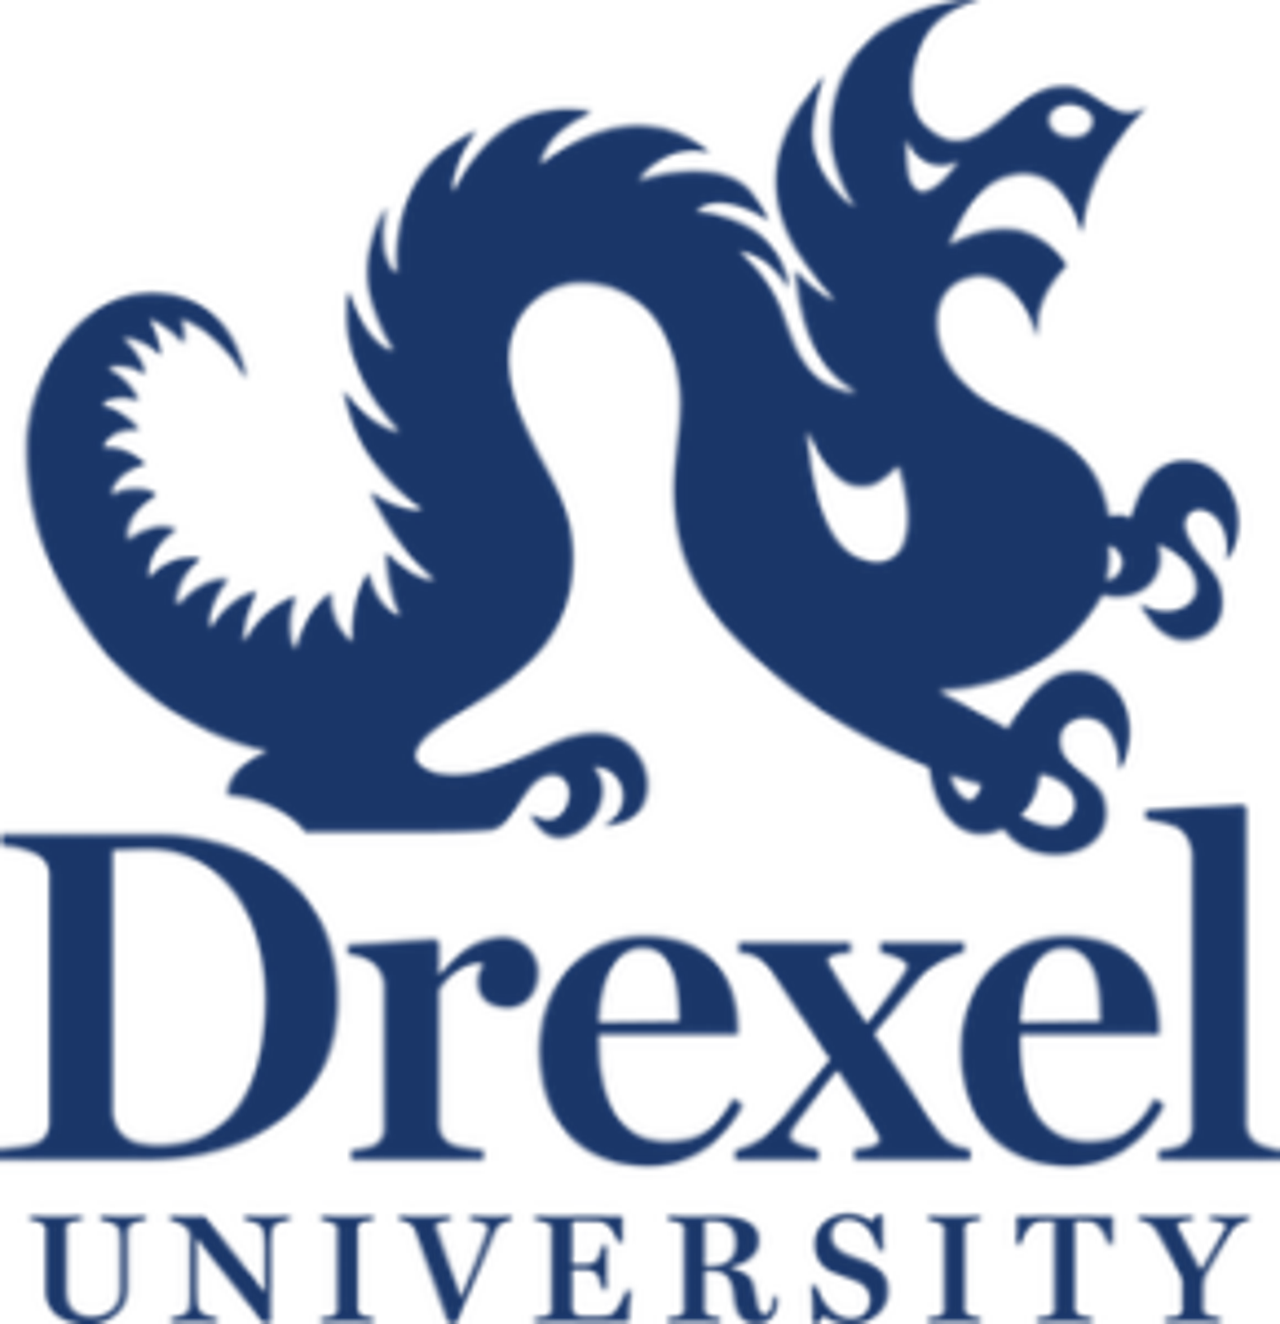 og-drexel-logo